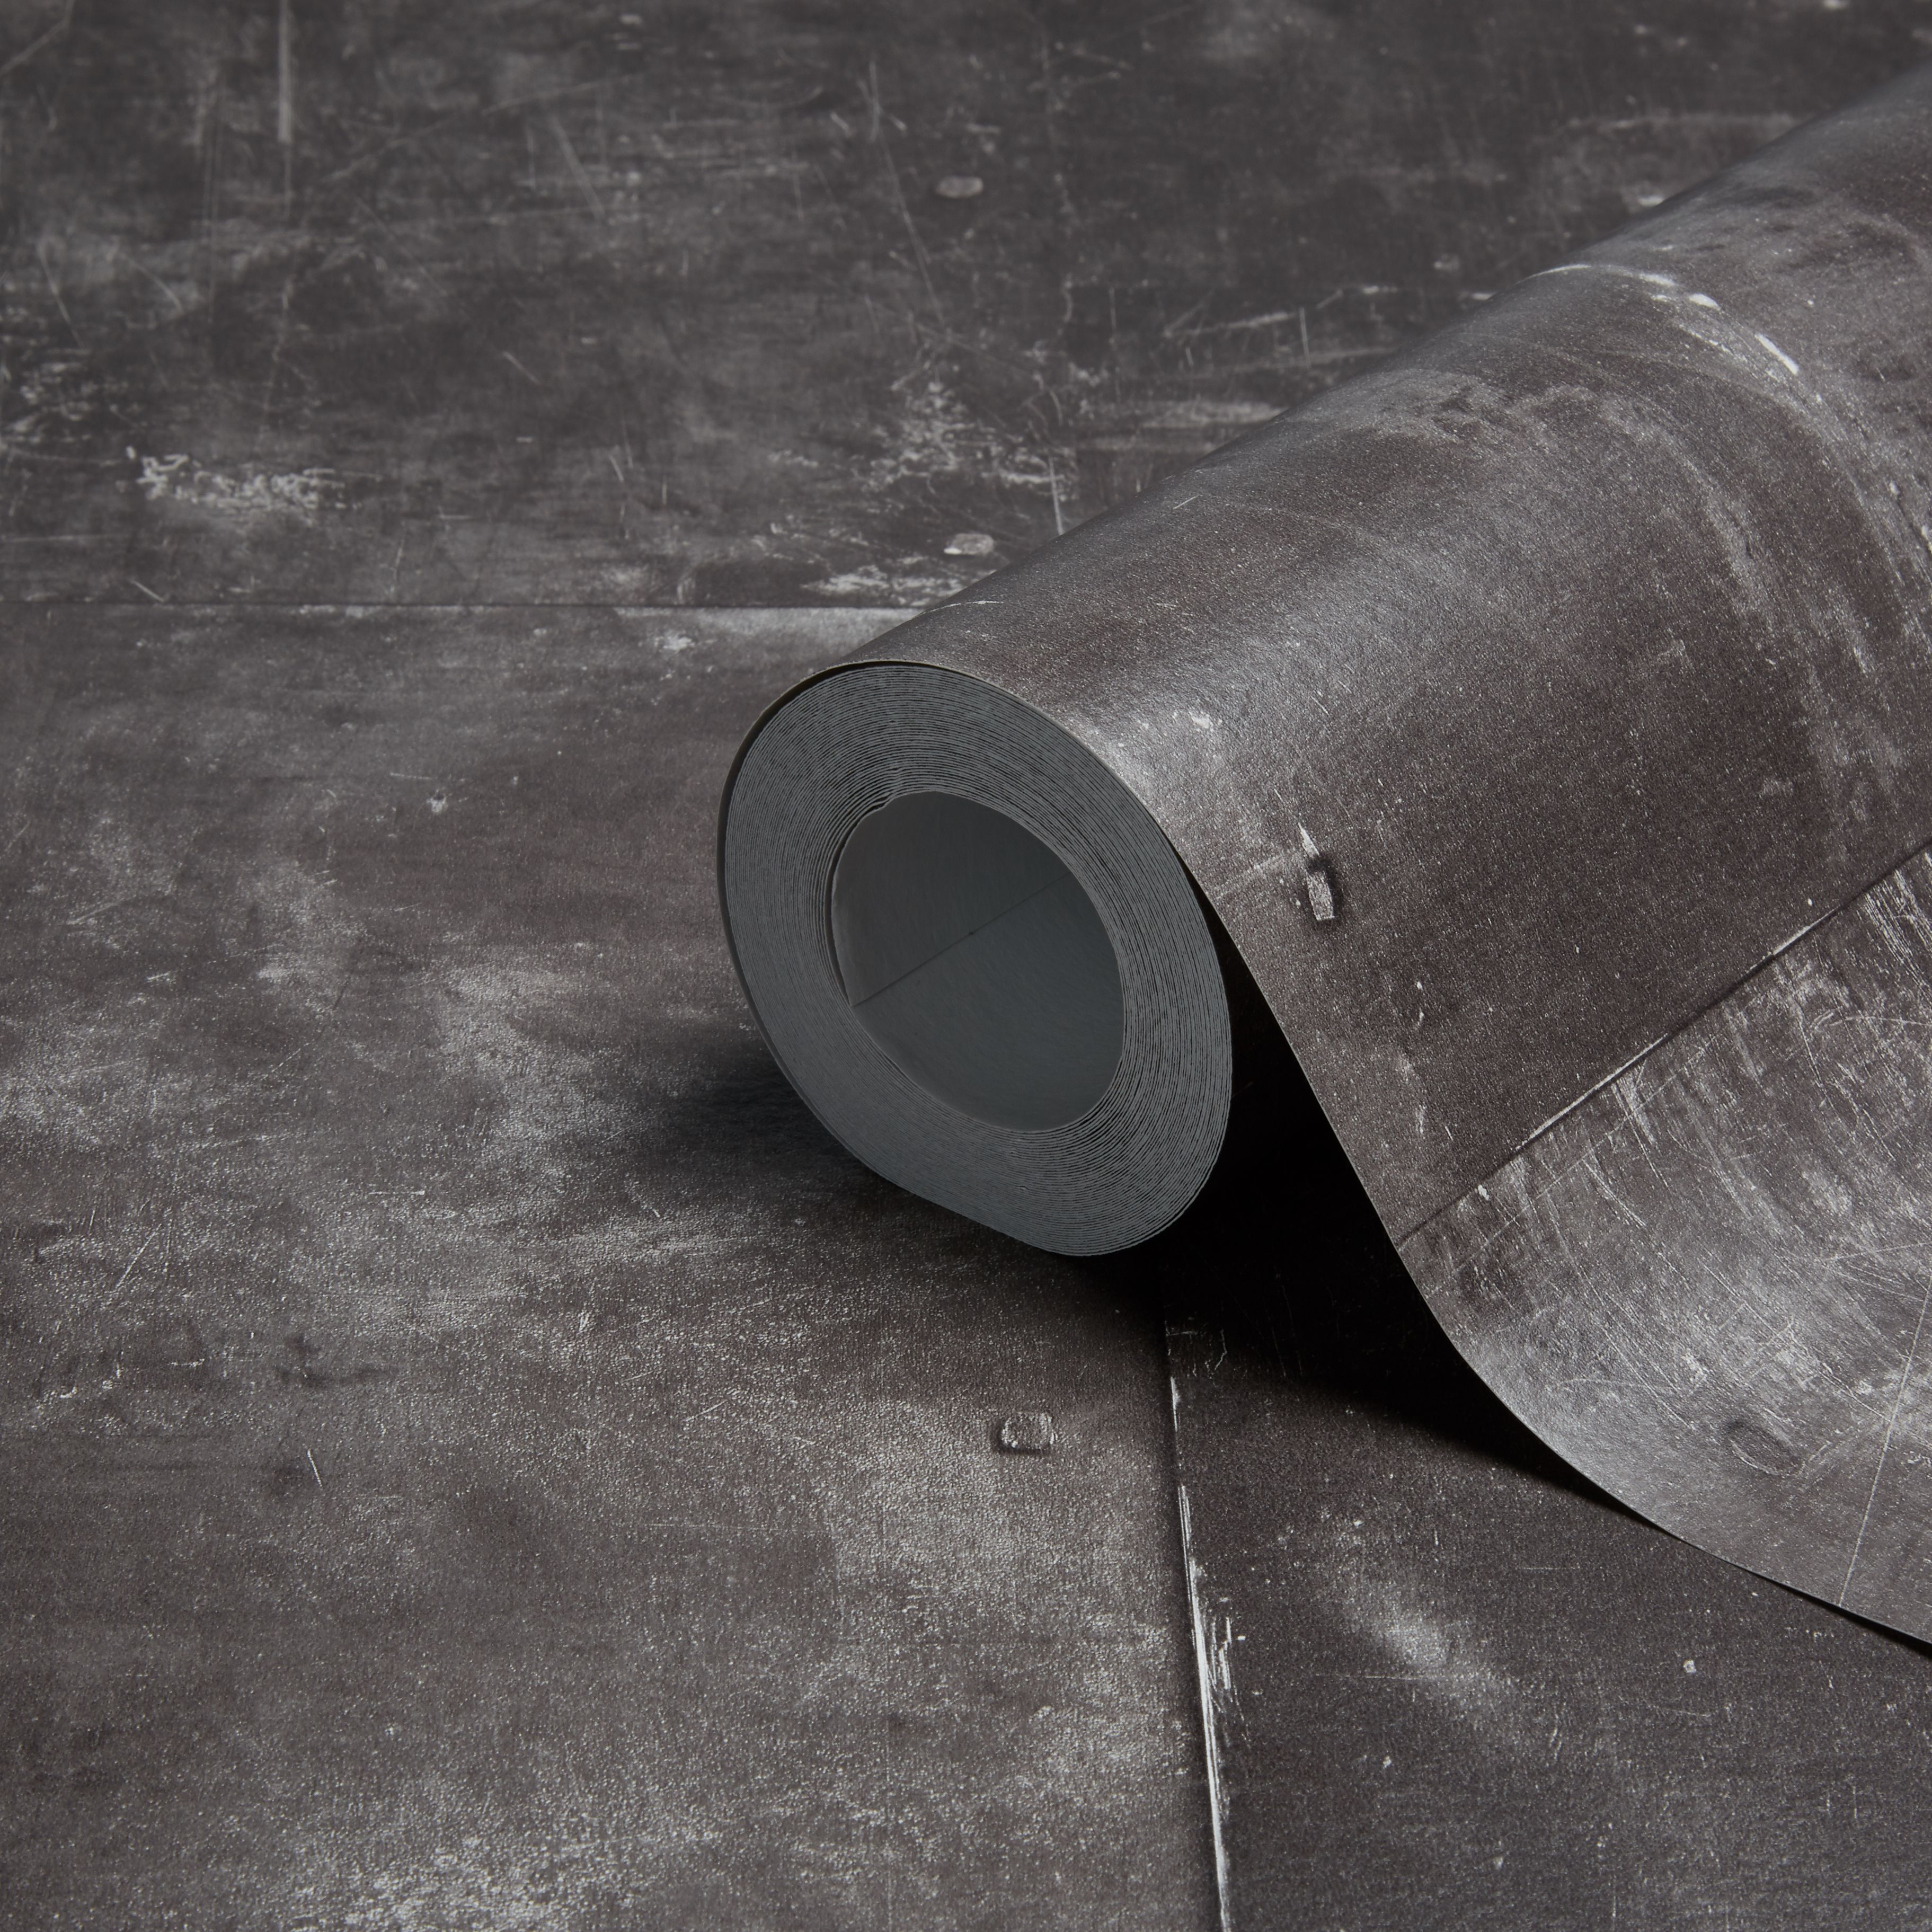 carta da parati aspetto metallo,pavimento,tubo,pavimentazione,asfalto,bianco e nero